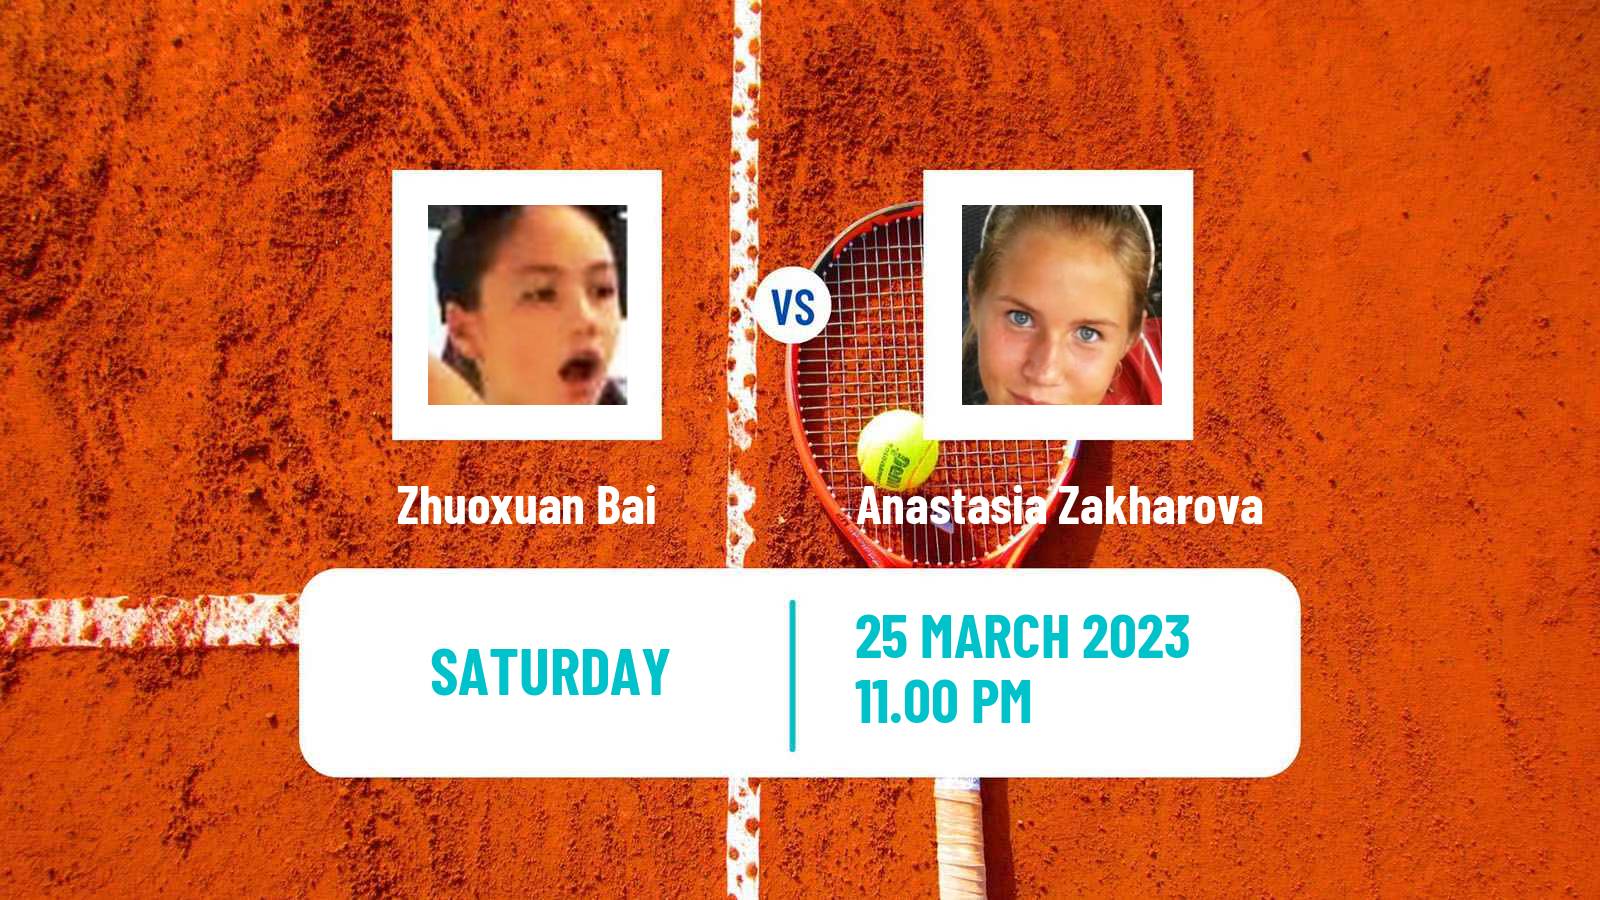 Tennis ITF Tournaments Zhuoxuan Bai - Anastasia Zakharova